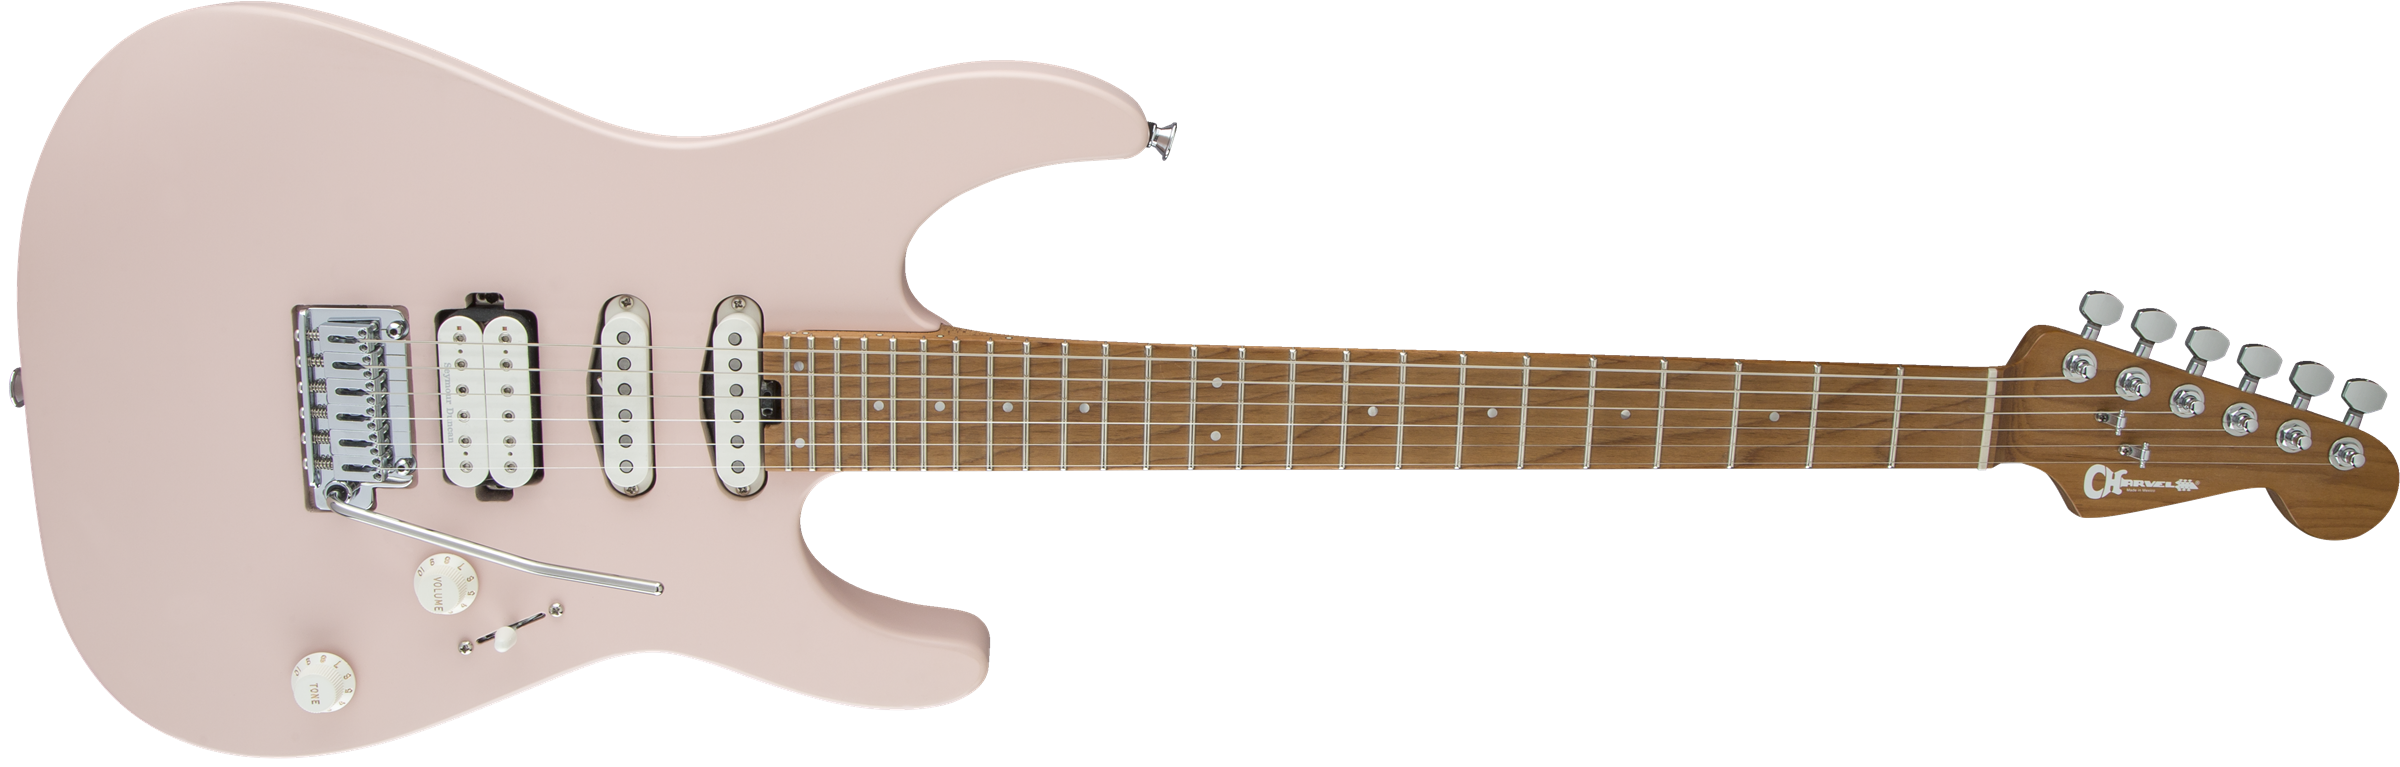 Charvel Pro-mod Dk24 Hss 2pt Cm Trem Mn - Satin Shell Pink - Guitare Électrique Forme Str - Variation 2